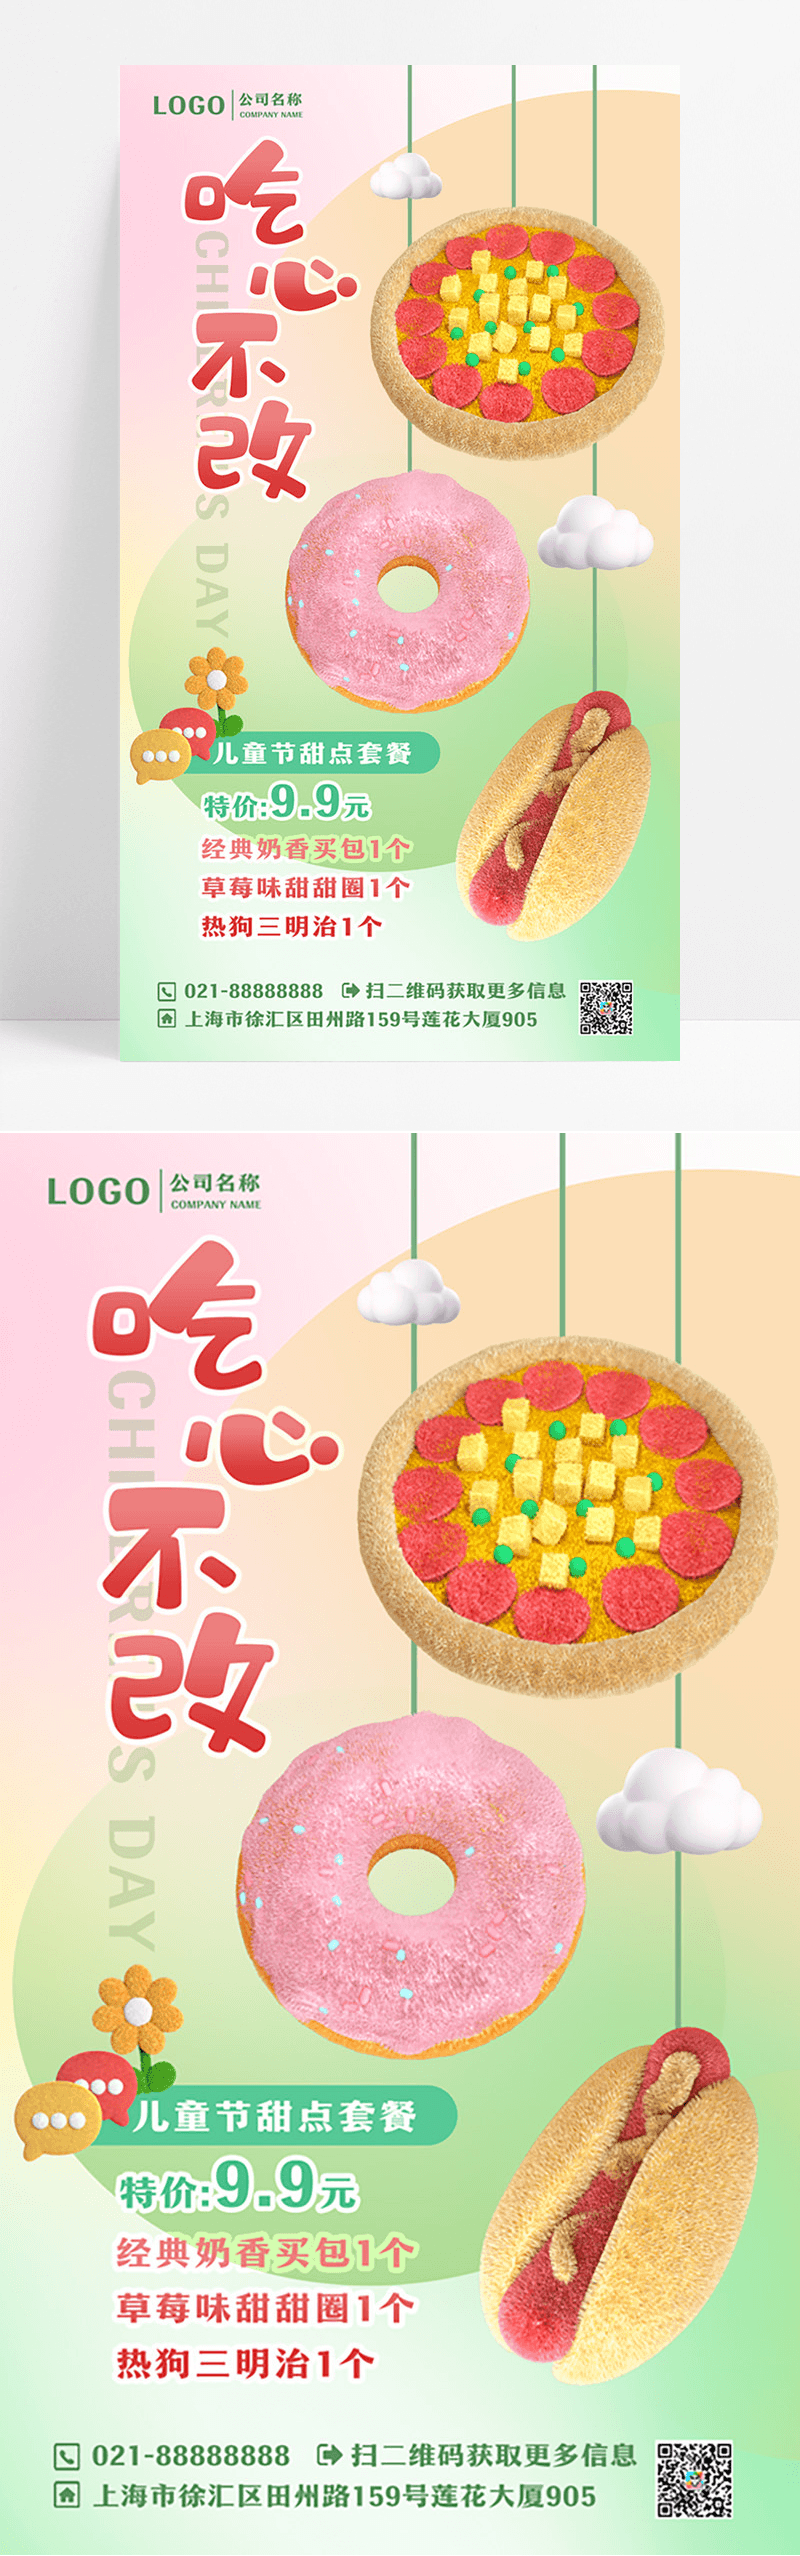 3d毛绒风卡通可爱儿童餐饮烘焙美食海报设计